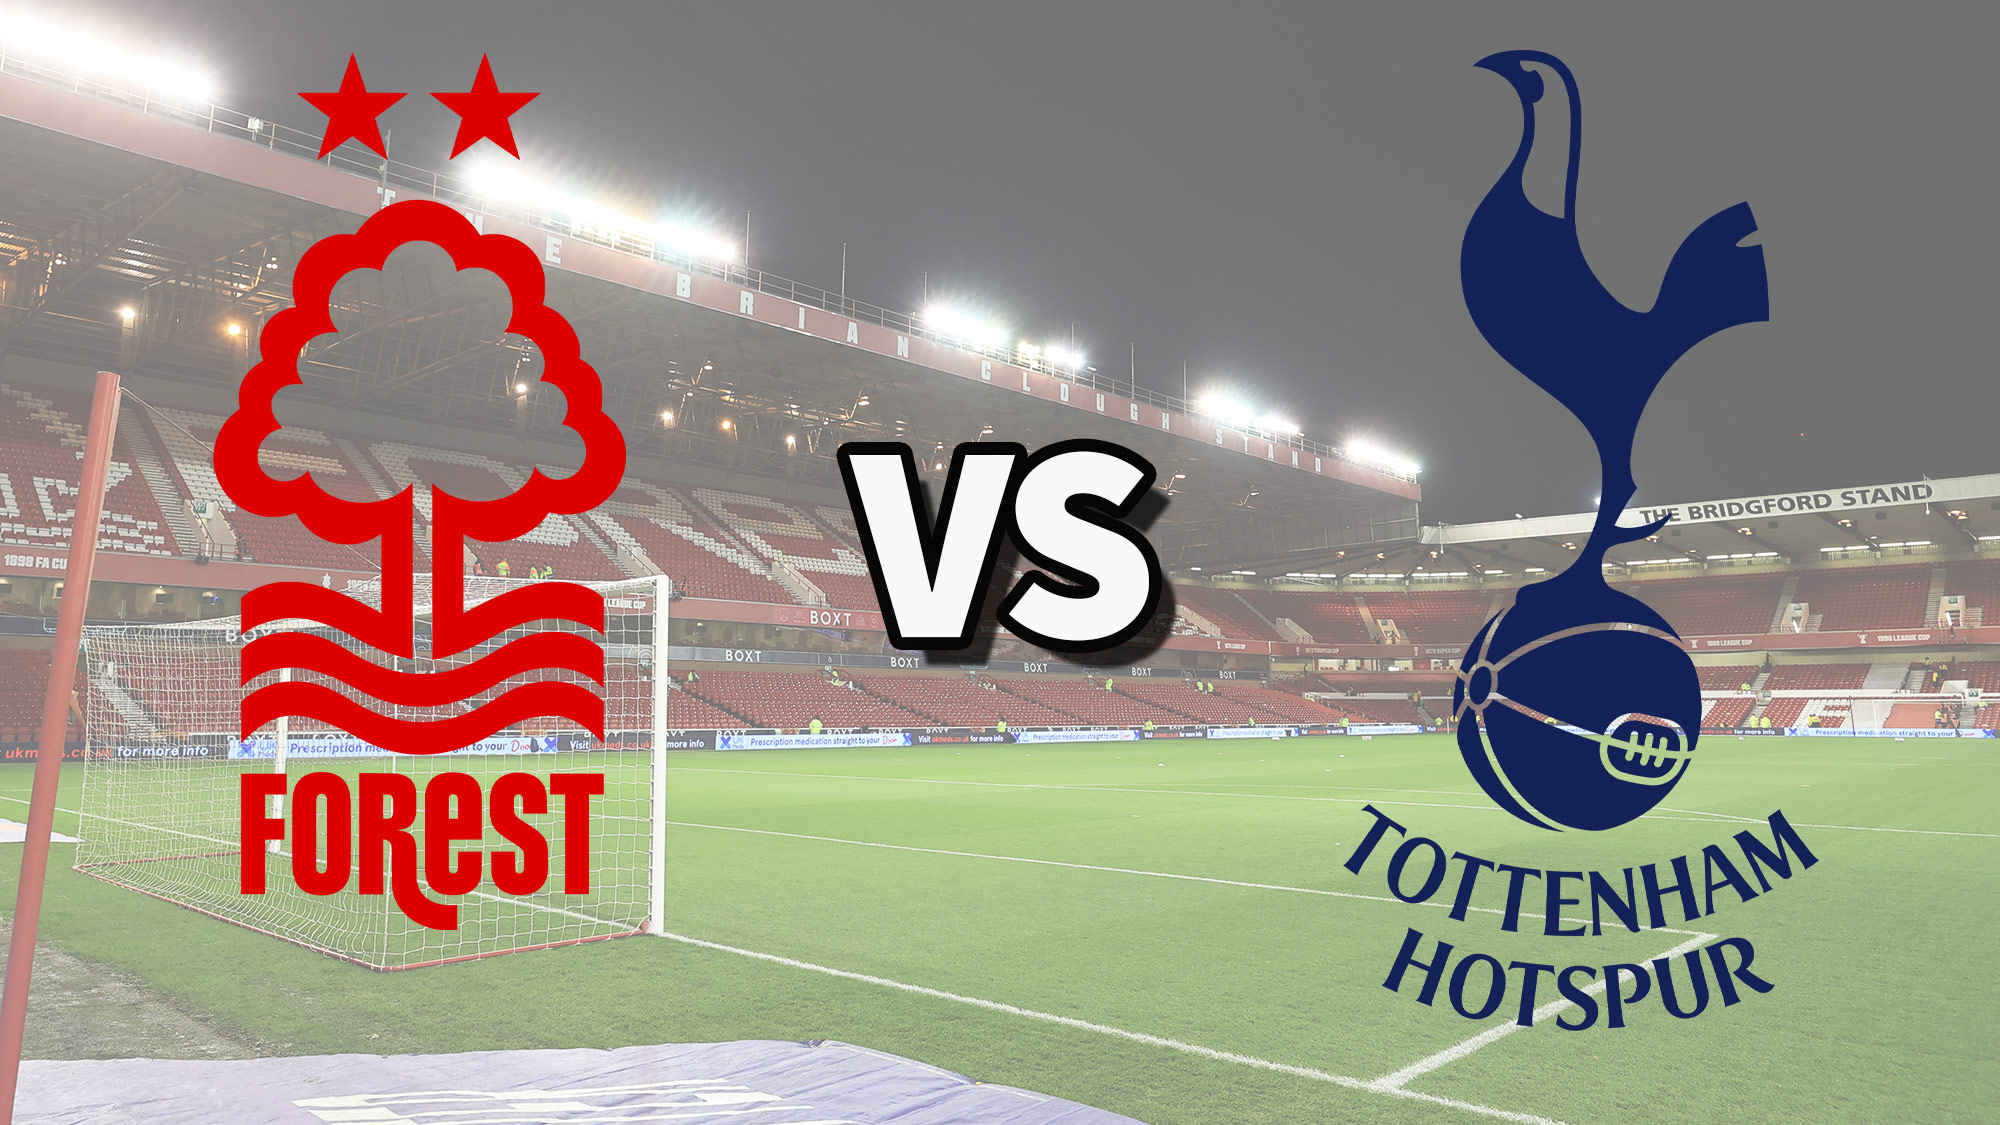  مشاهدة مباراة توتنهام هوتسبير و نوتينغهام فورست بث مباشر 09/11/2022 Nottingham Forest vs Tottenham